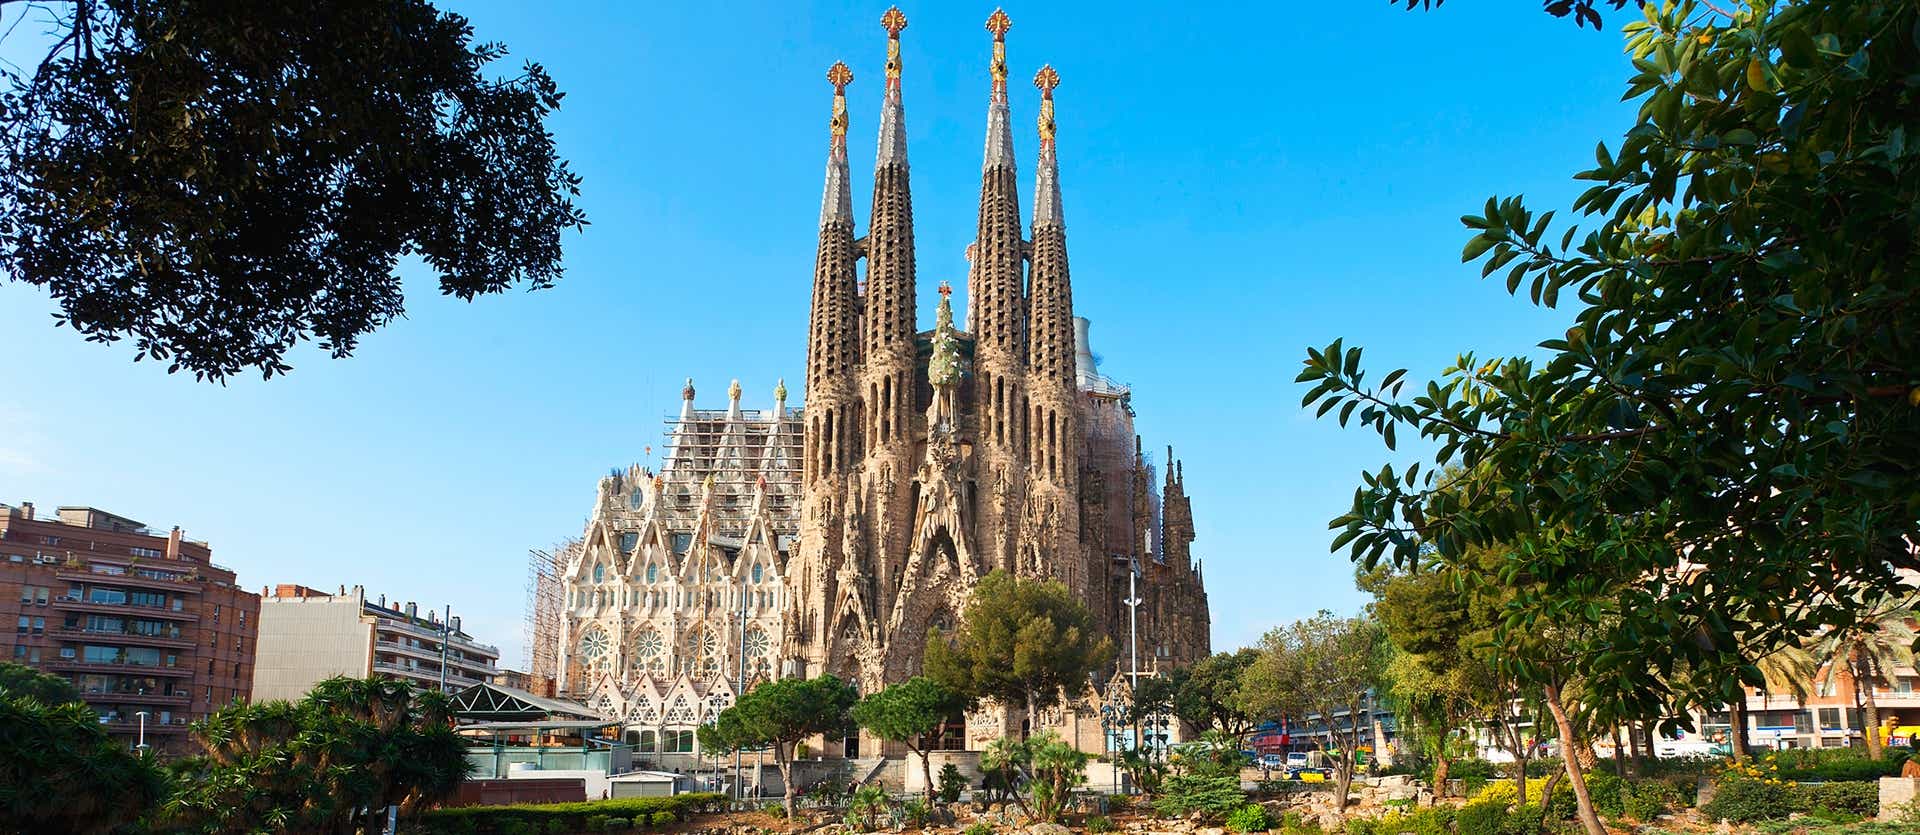 Sagrada Familia <span class="iconos separador"></span> Barcelona